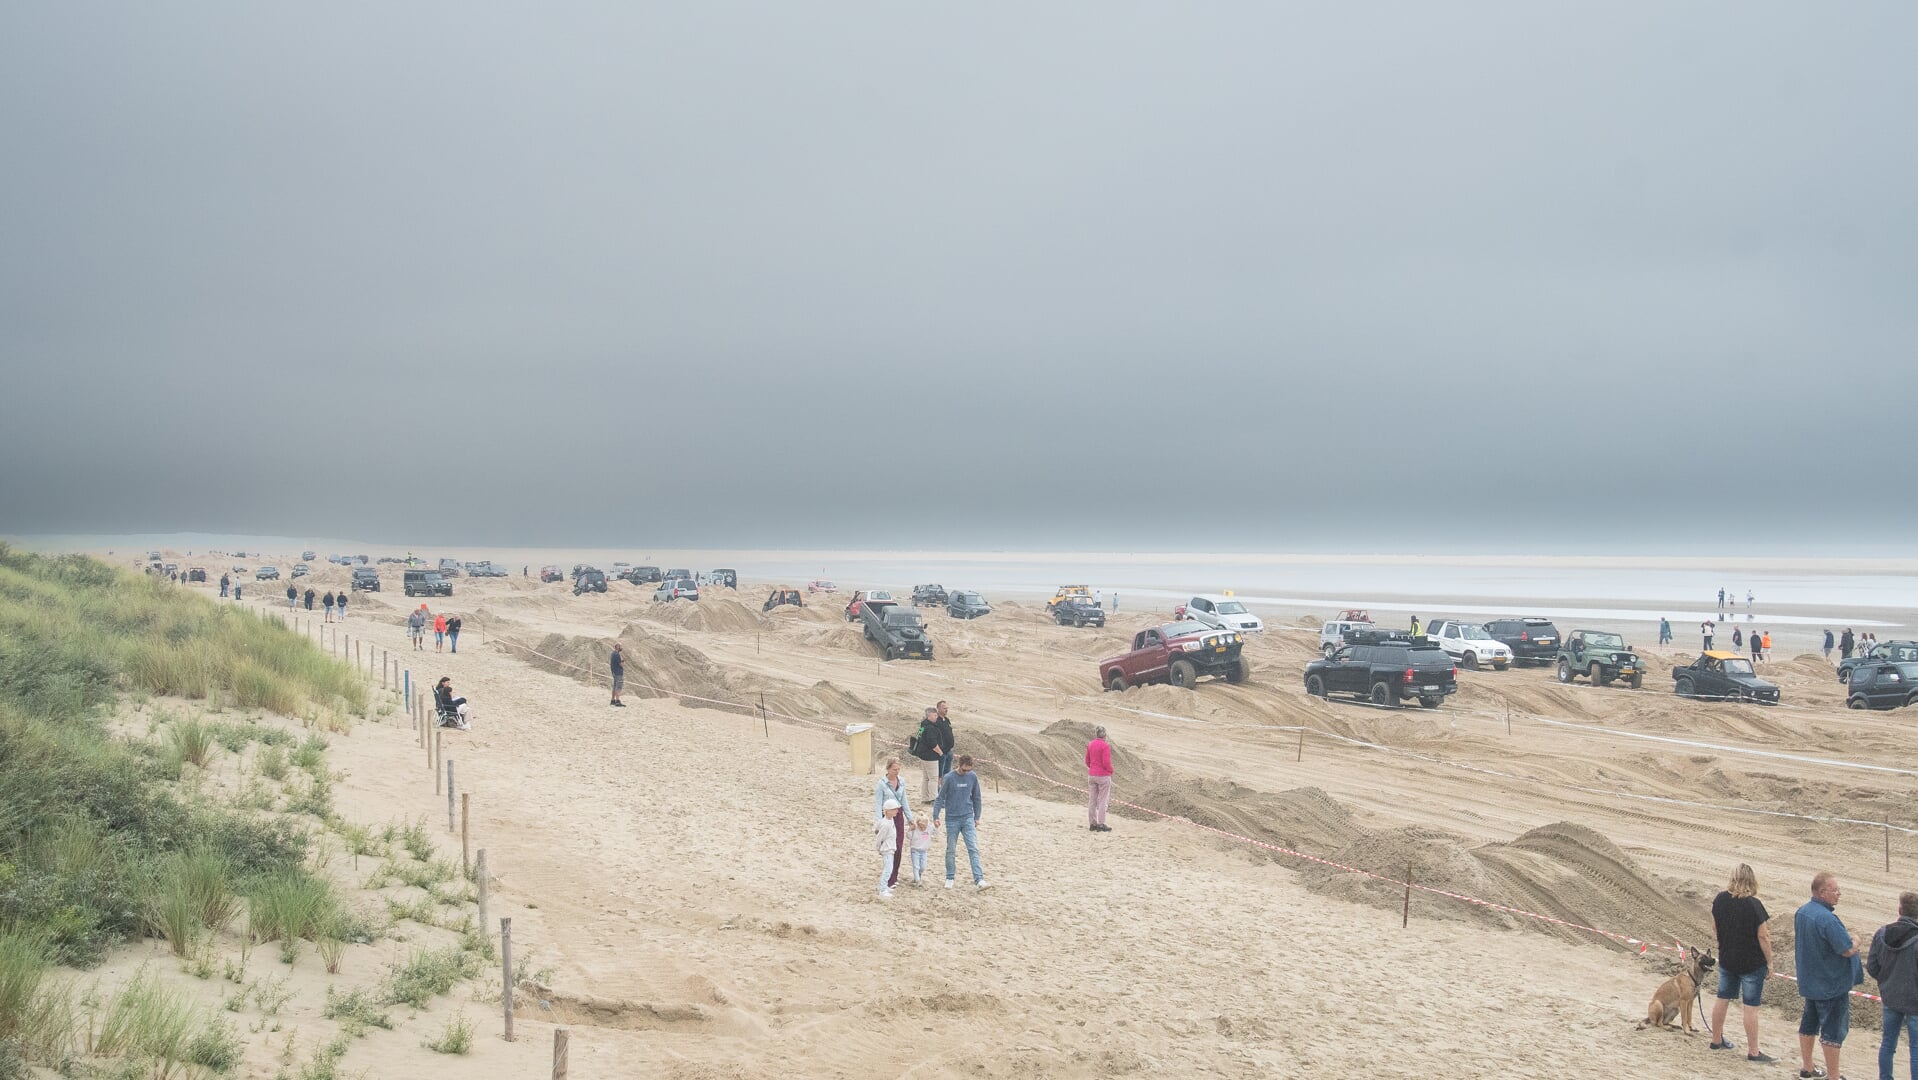 Intensief gebruik van het strand zoals erop crossen met auto's is slecht voor de meiofauna, aldus Renema. (Foto: Jan Baks)